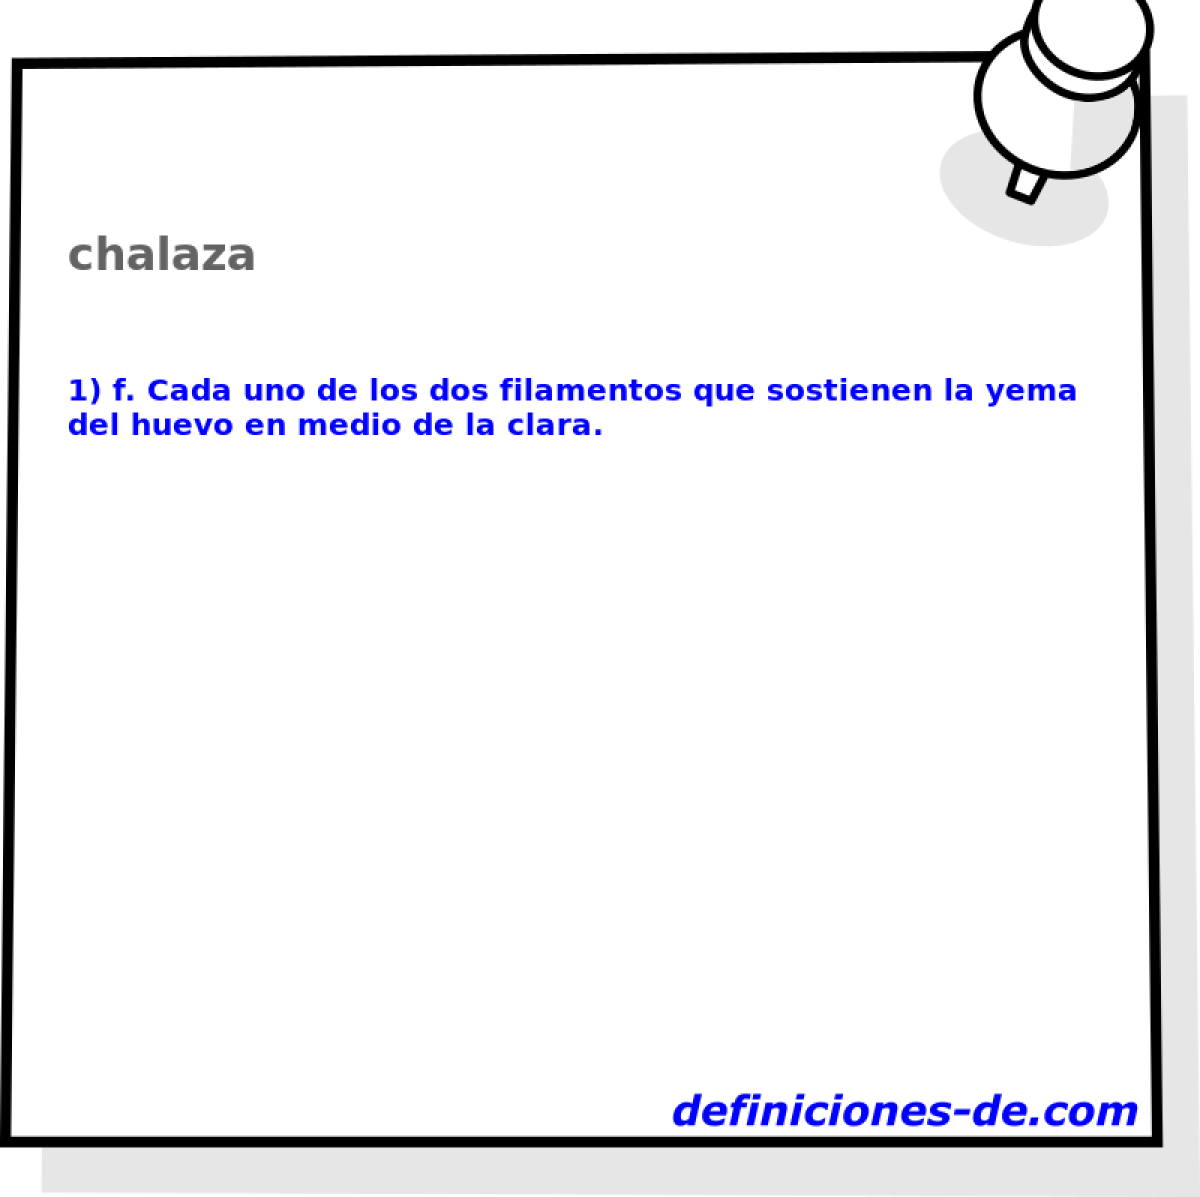 chalaza 